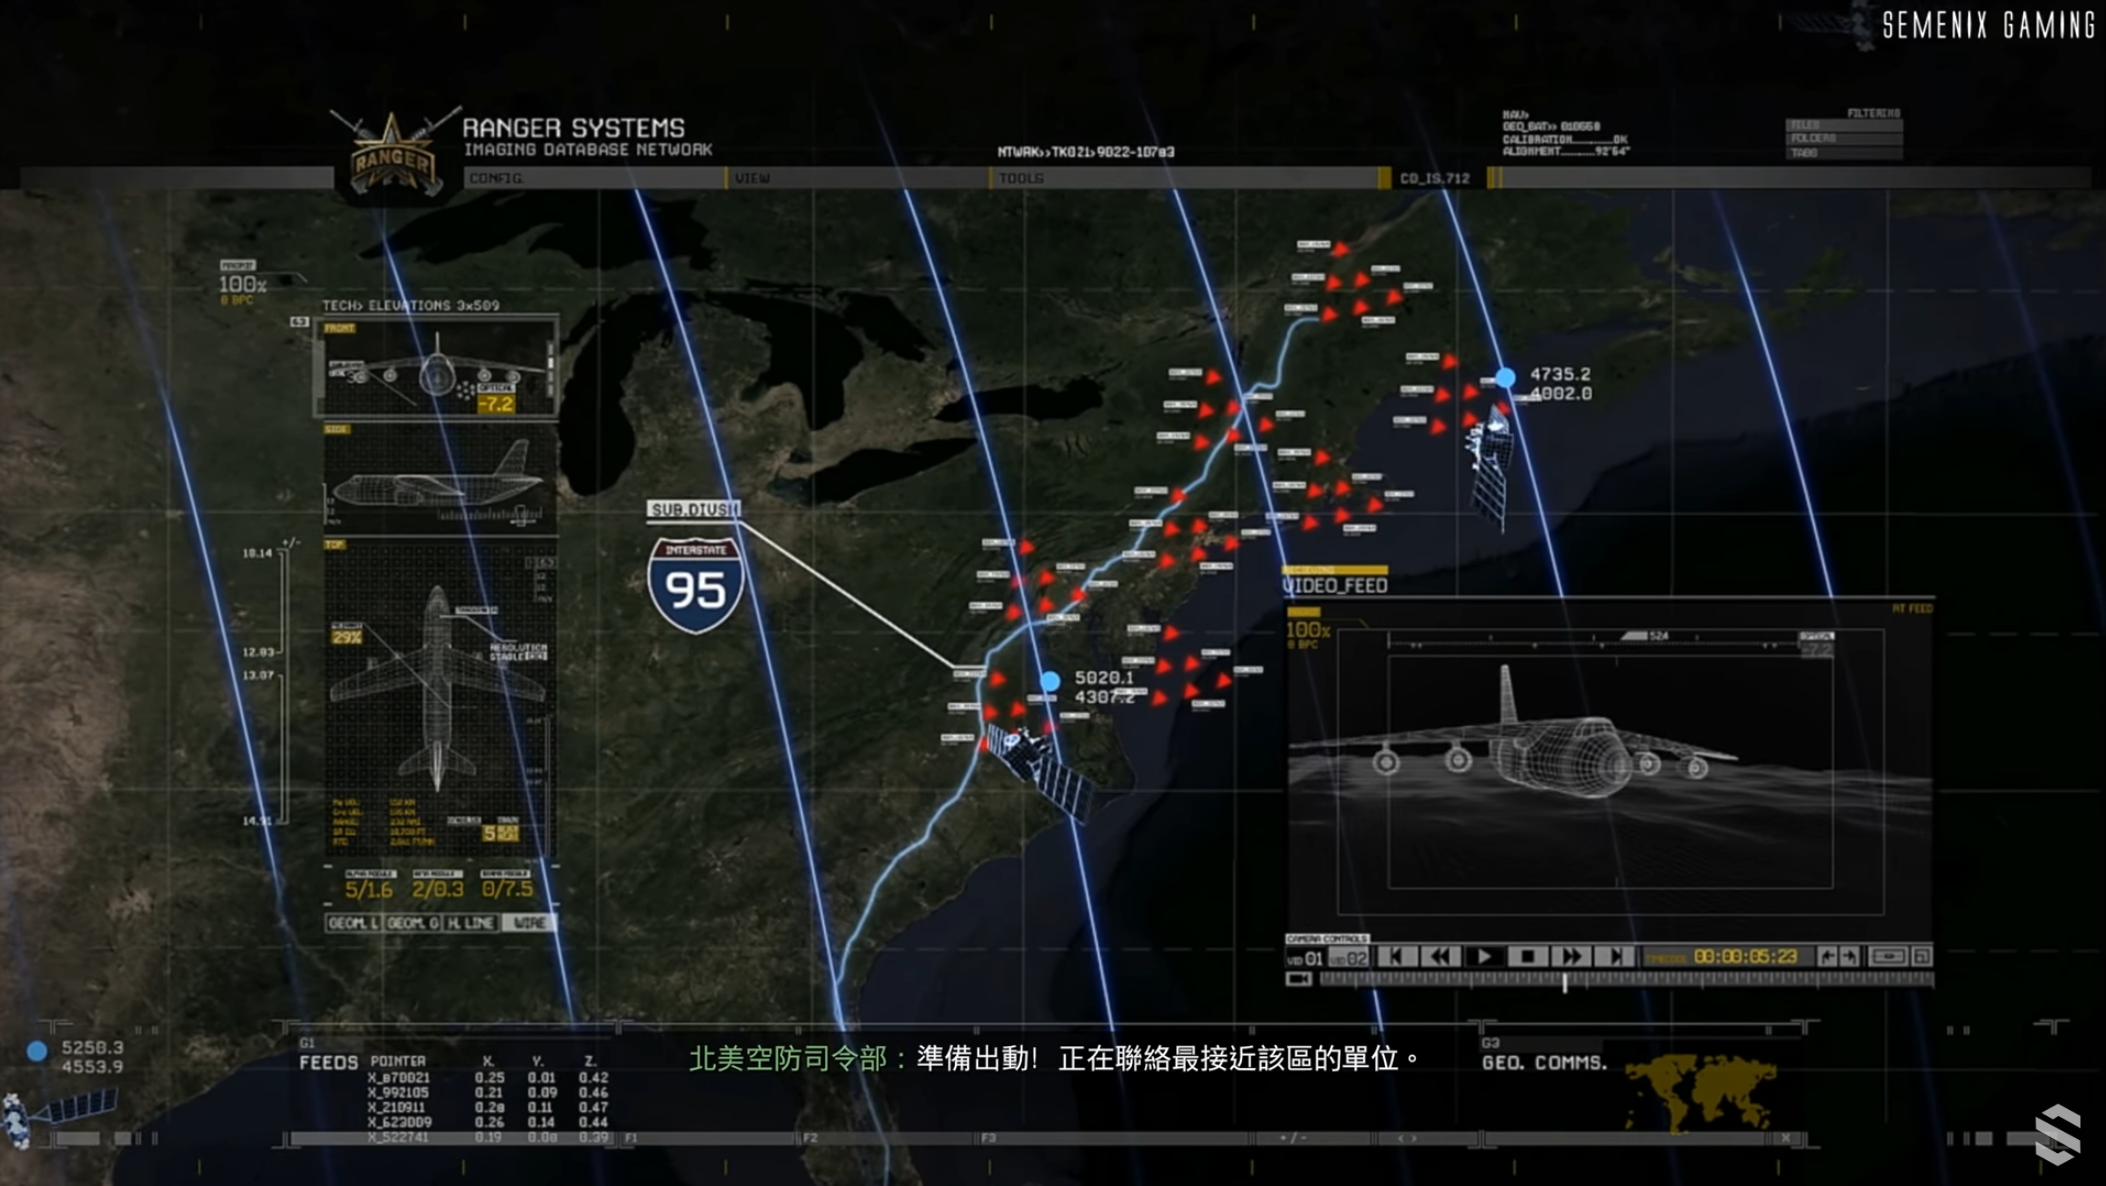 《使命召唤：现代战争2》的截图。（图源：Semenix Gaming）